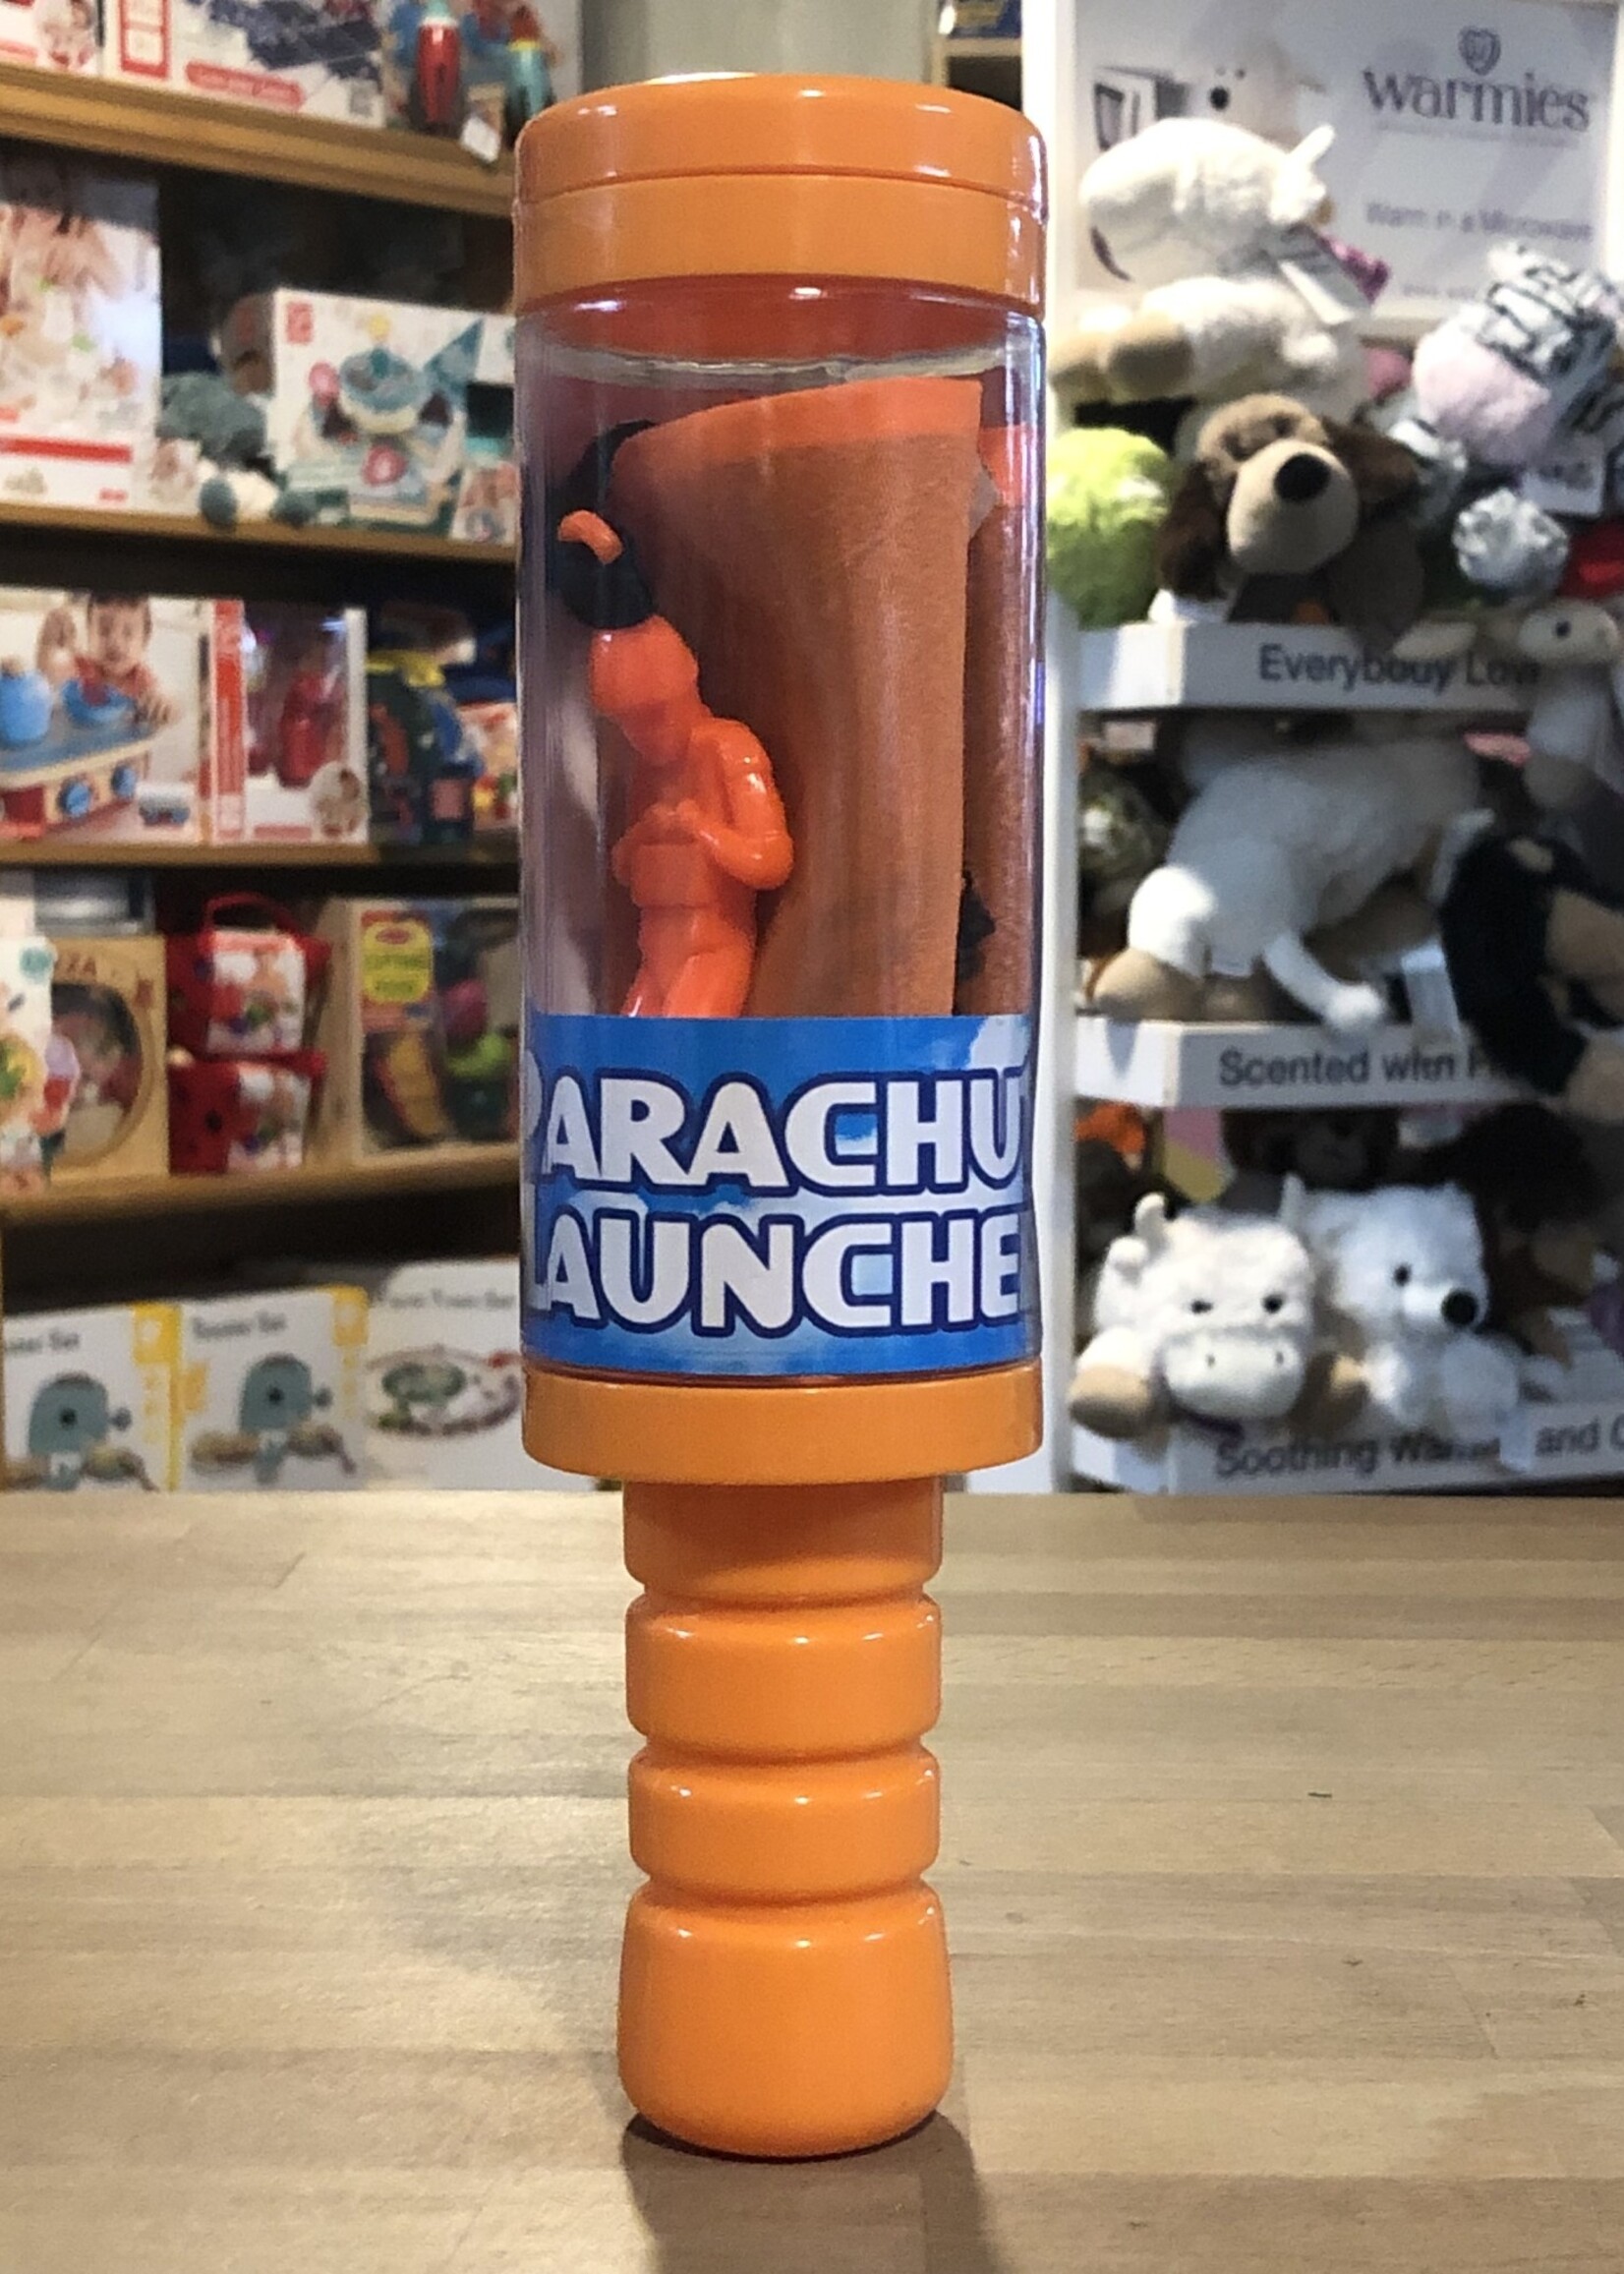 Parachute Launcher